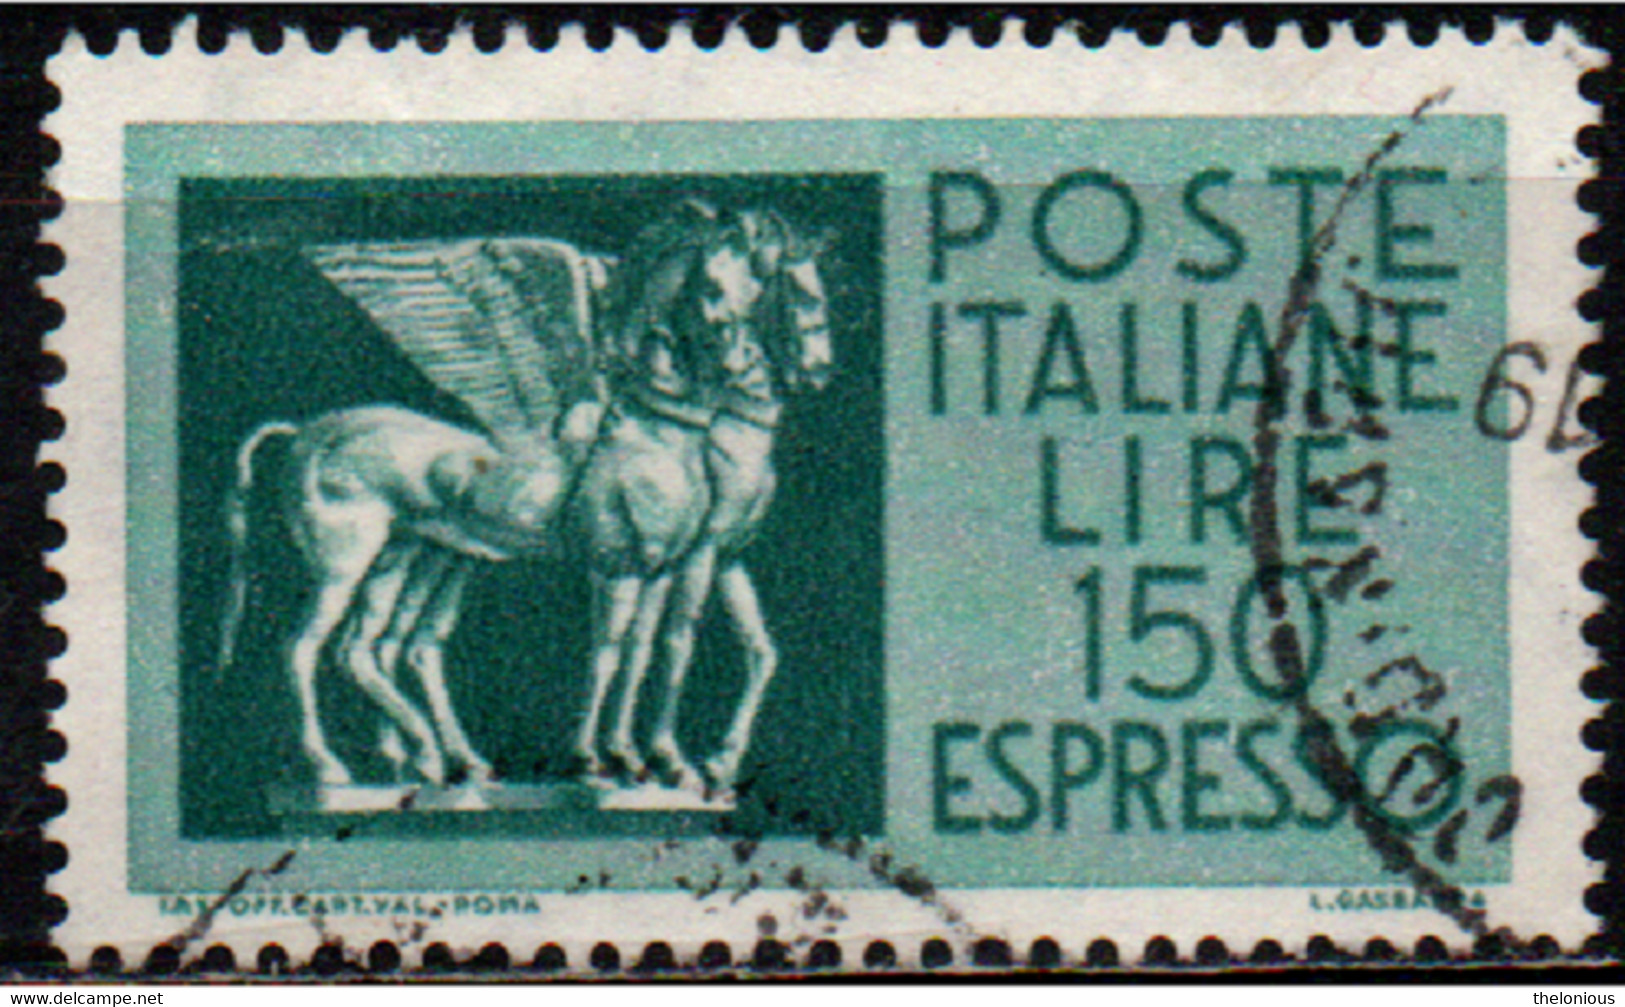 # 1968 Italia Repubblica Espresso 150 Lire Usato Fluorescente - Express-post/pneumatisch